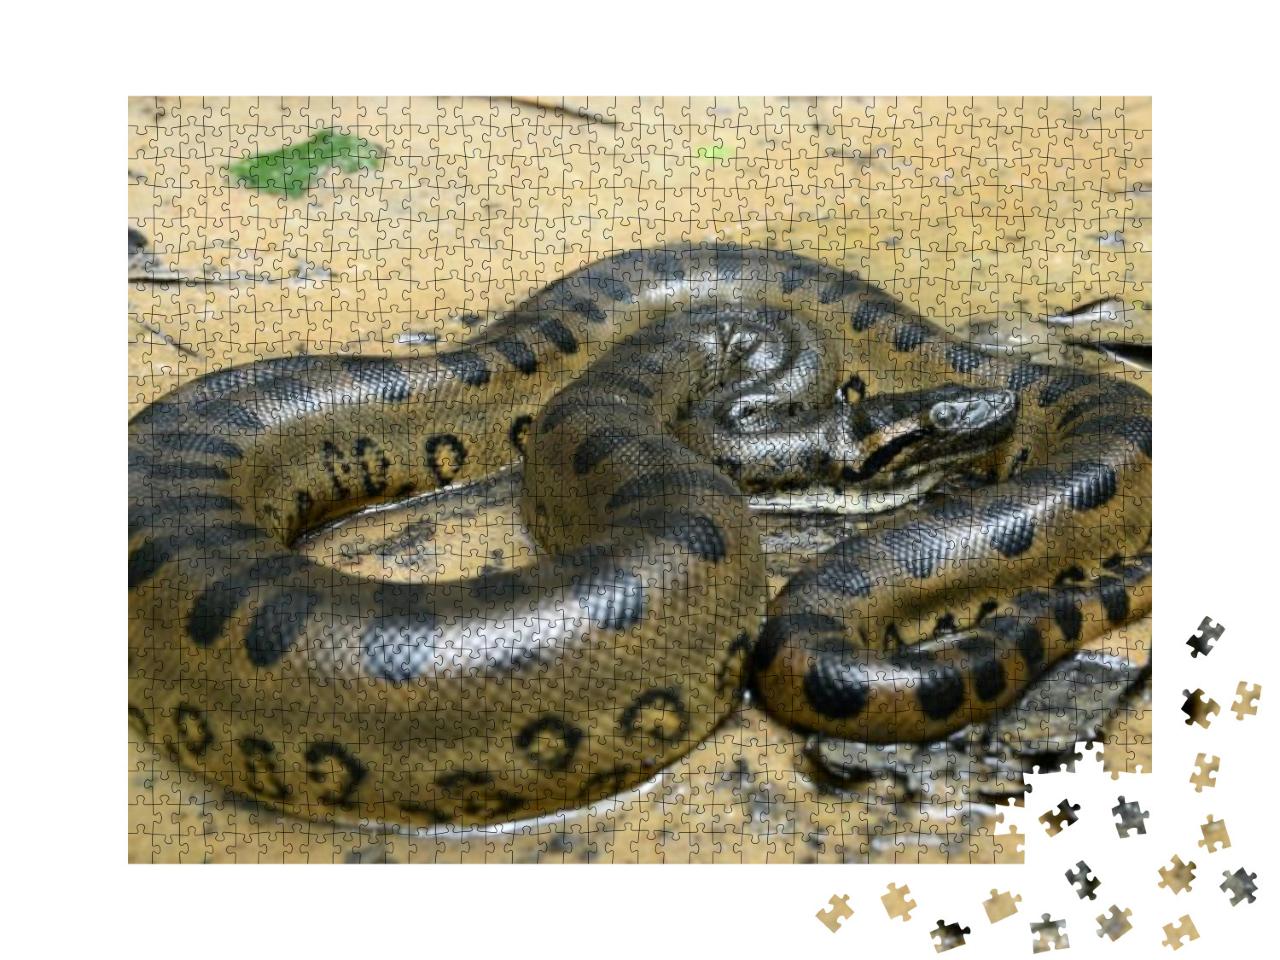 Green Anaconda Eunectes Murinus... Jigsaw Puzzle with 1000 pieces